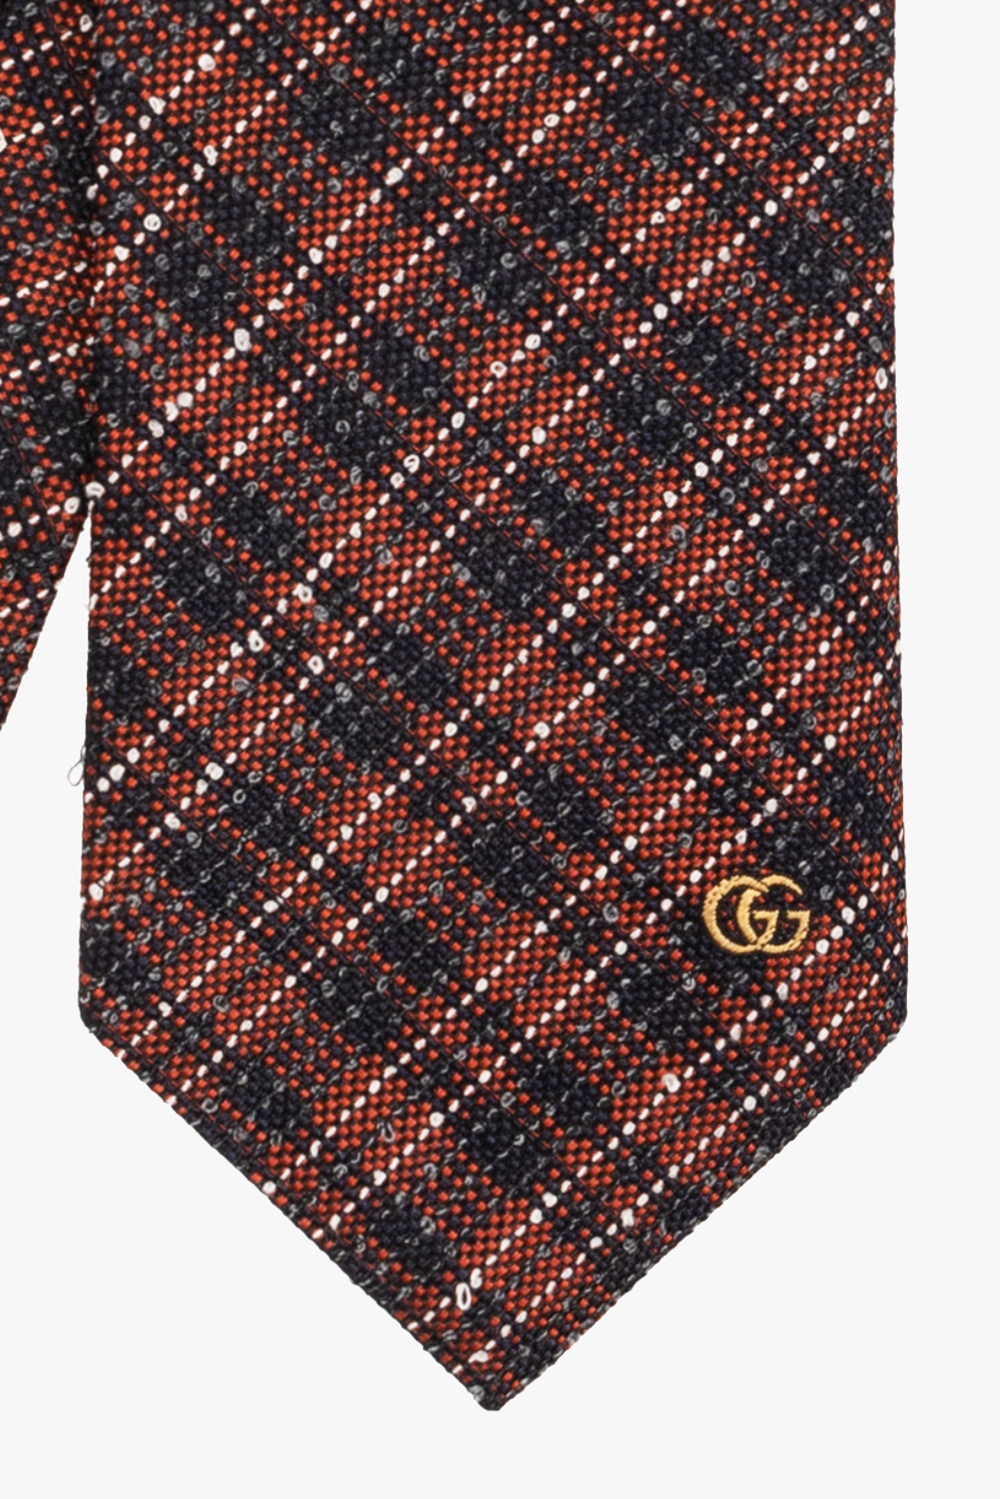 Gucci Checked tie